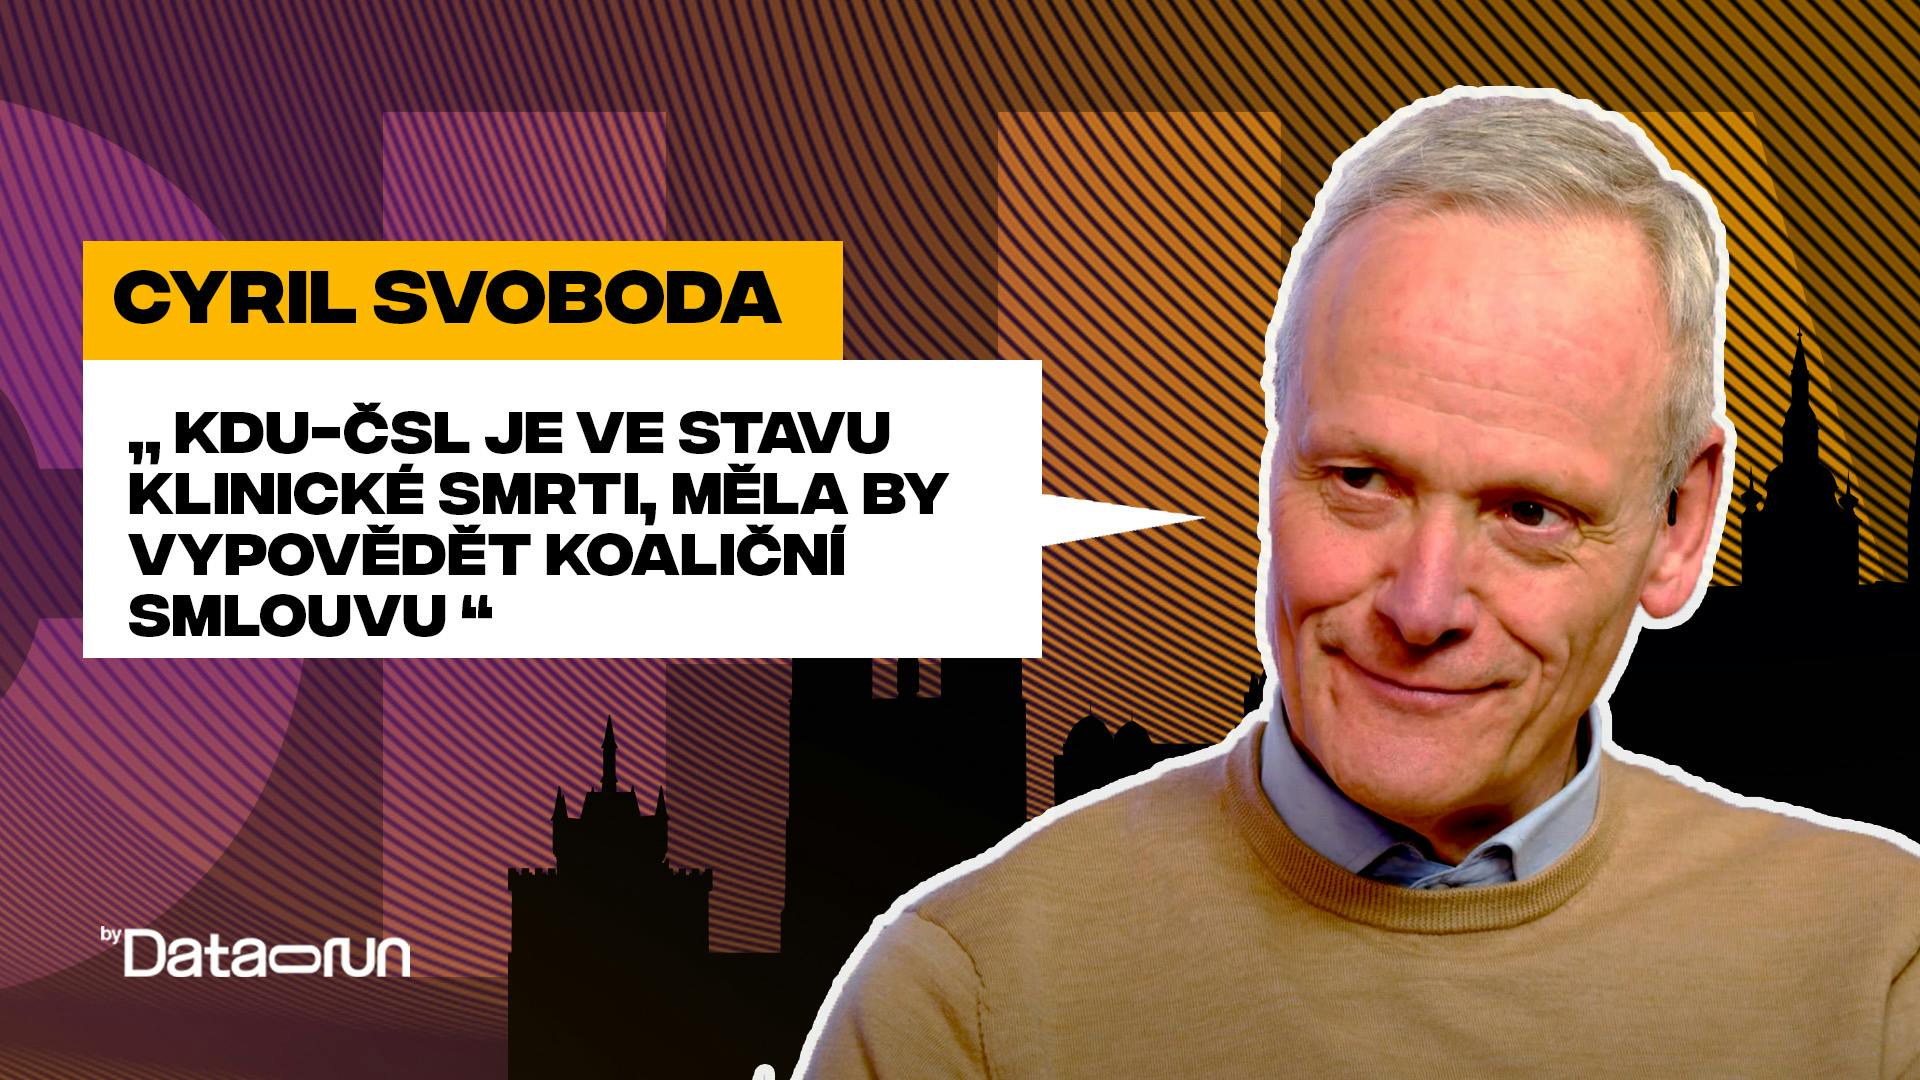 Preview of Cyril Svoboda: KDU-ČSL je ve stavu klinické smrti, měla by vypovědět koaliční smlouvu